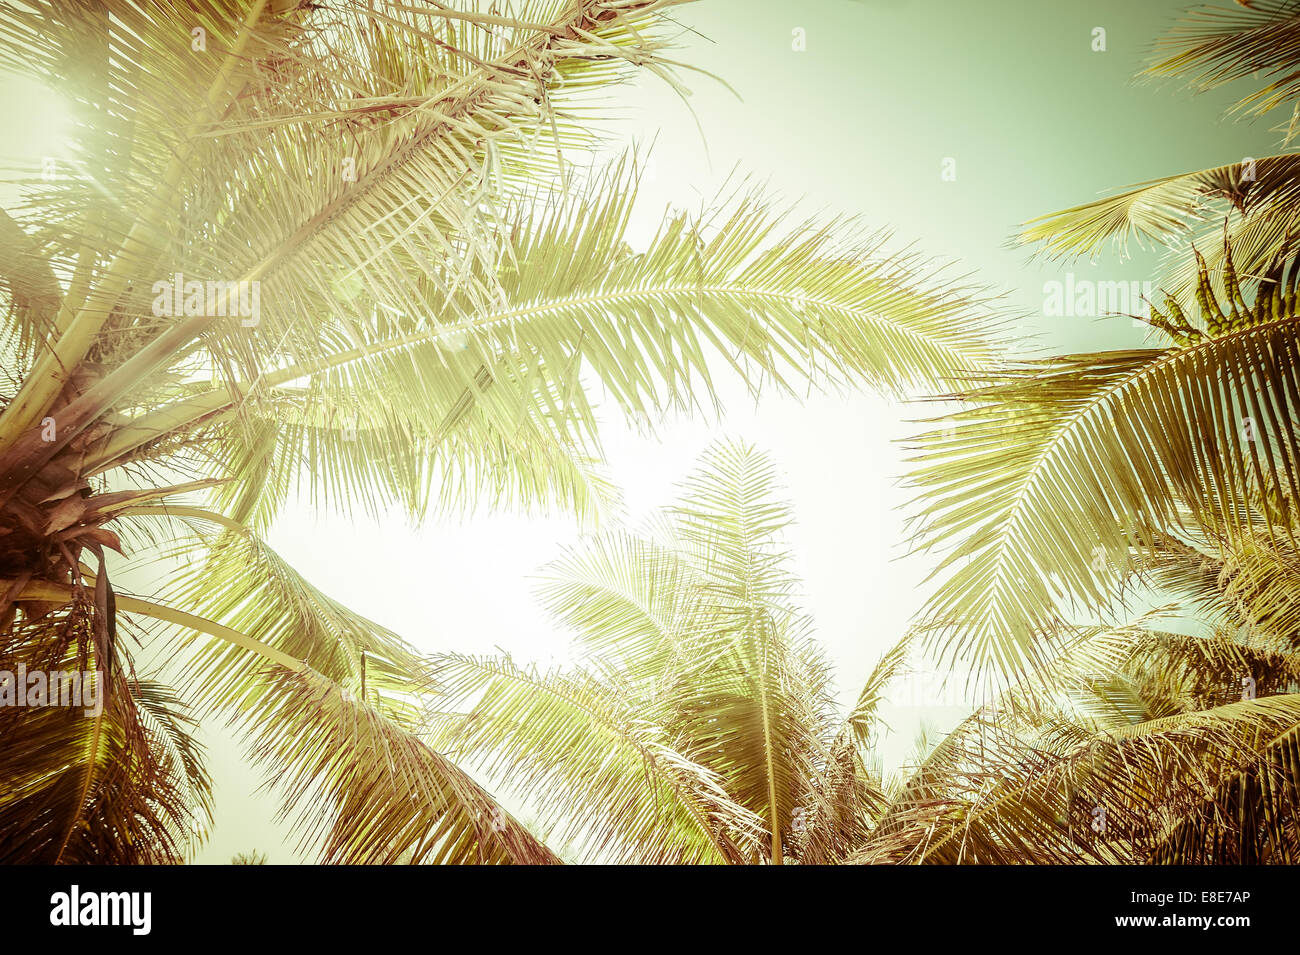 Résumé de l'été dans l'arrière-plan vintage style avec feuilles de palmier tropical à sunny day Banque D'Images